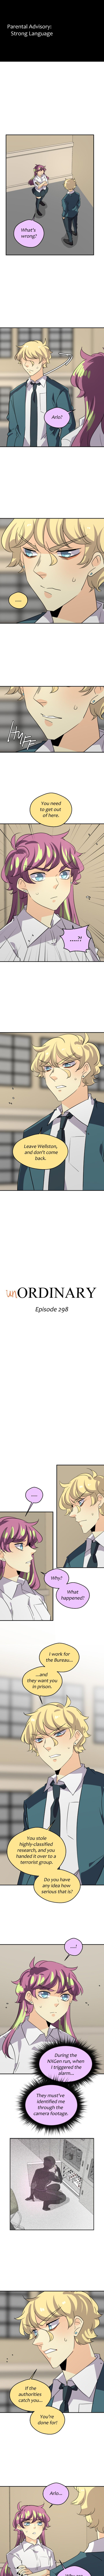 unordinary_306_1